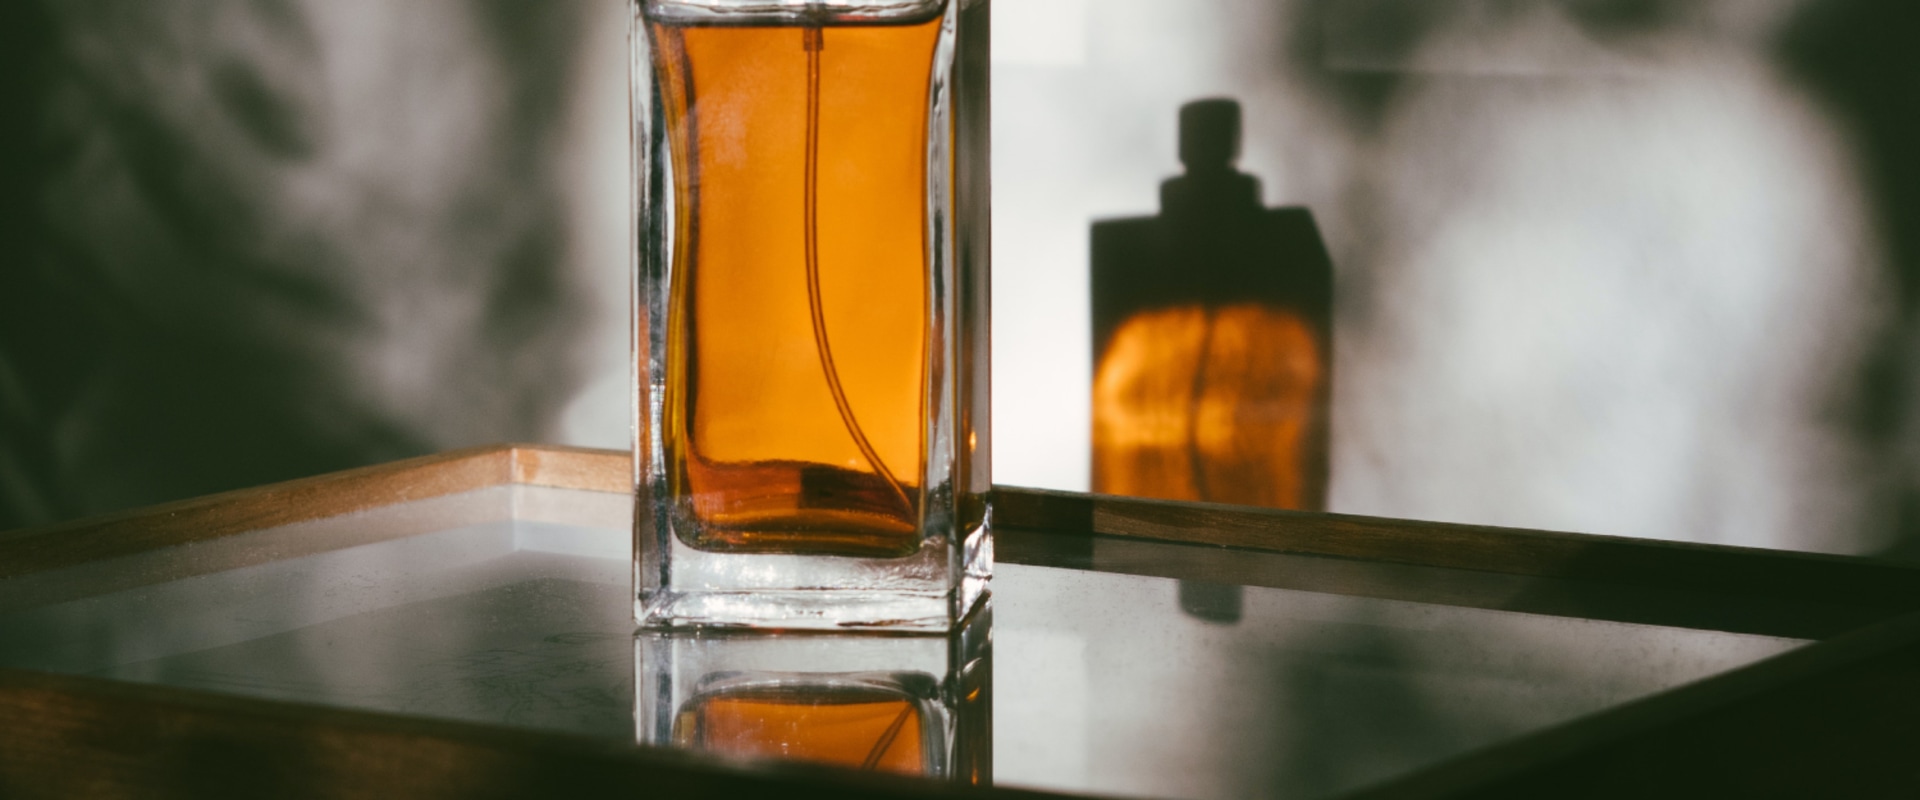 Designer Eau de Parfum Brands Explained